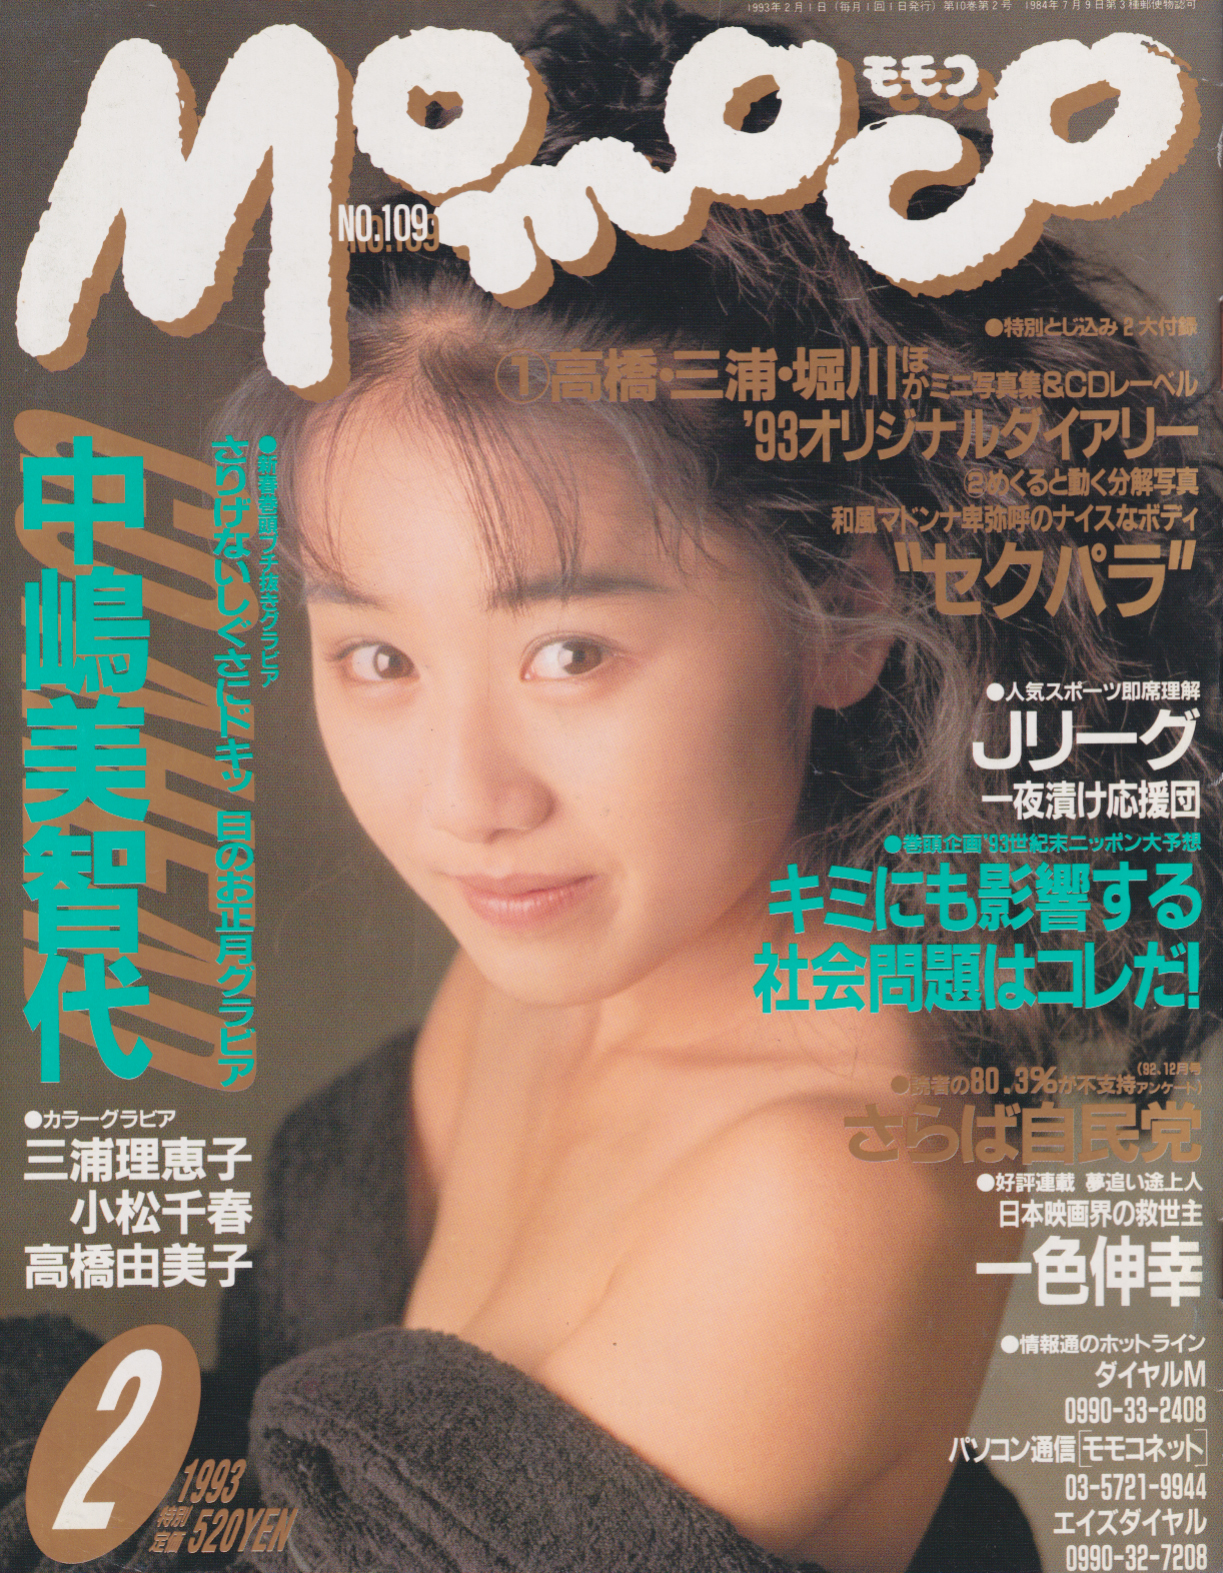  モモコ/Momoco 1993年2月号 (No.109) 雑誌